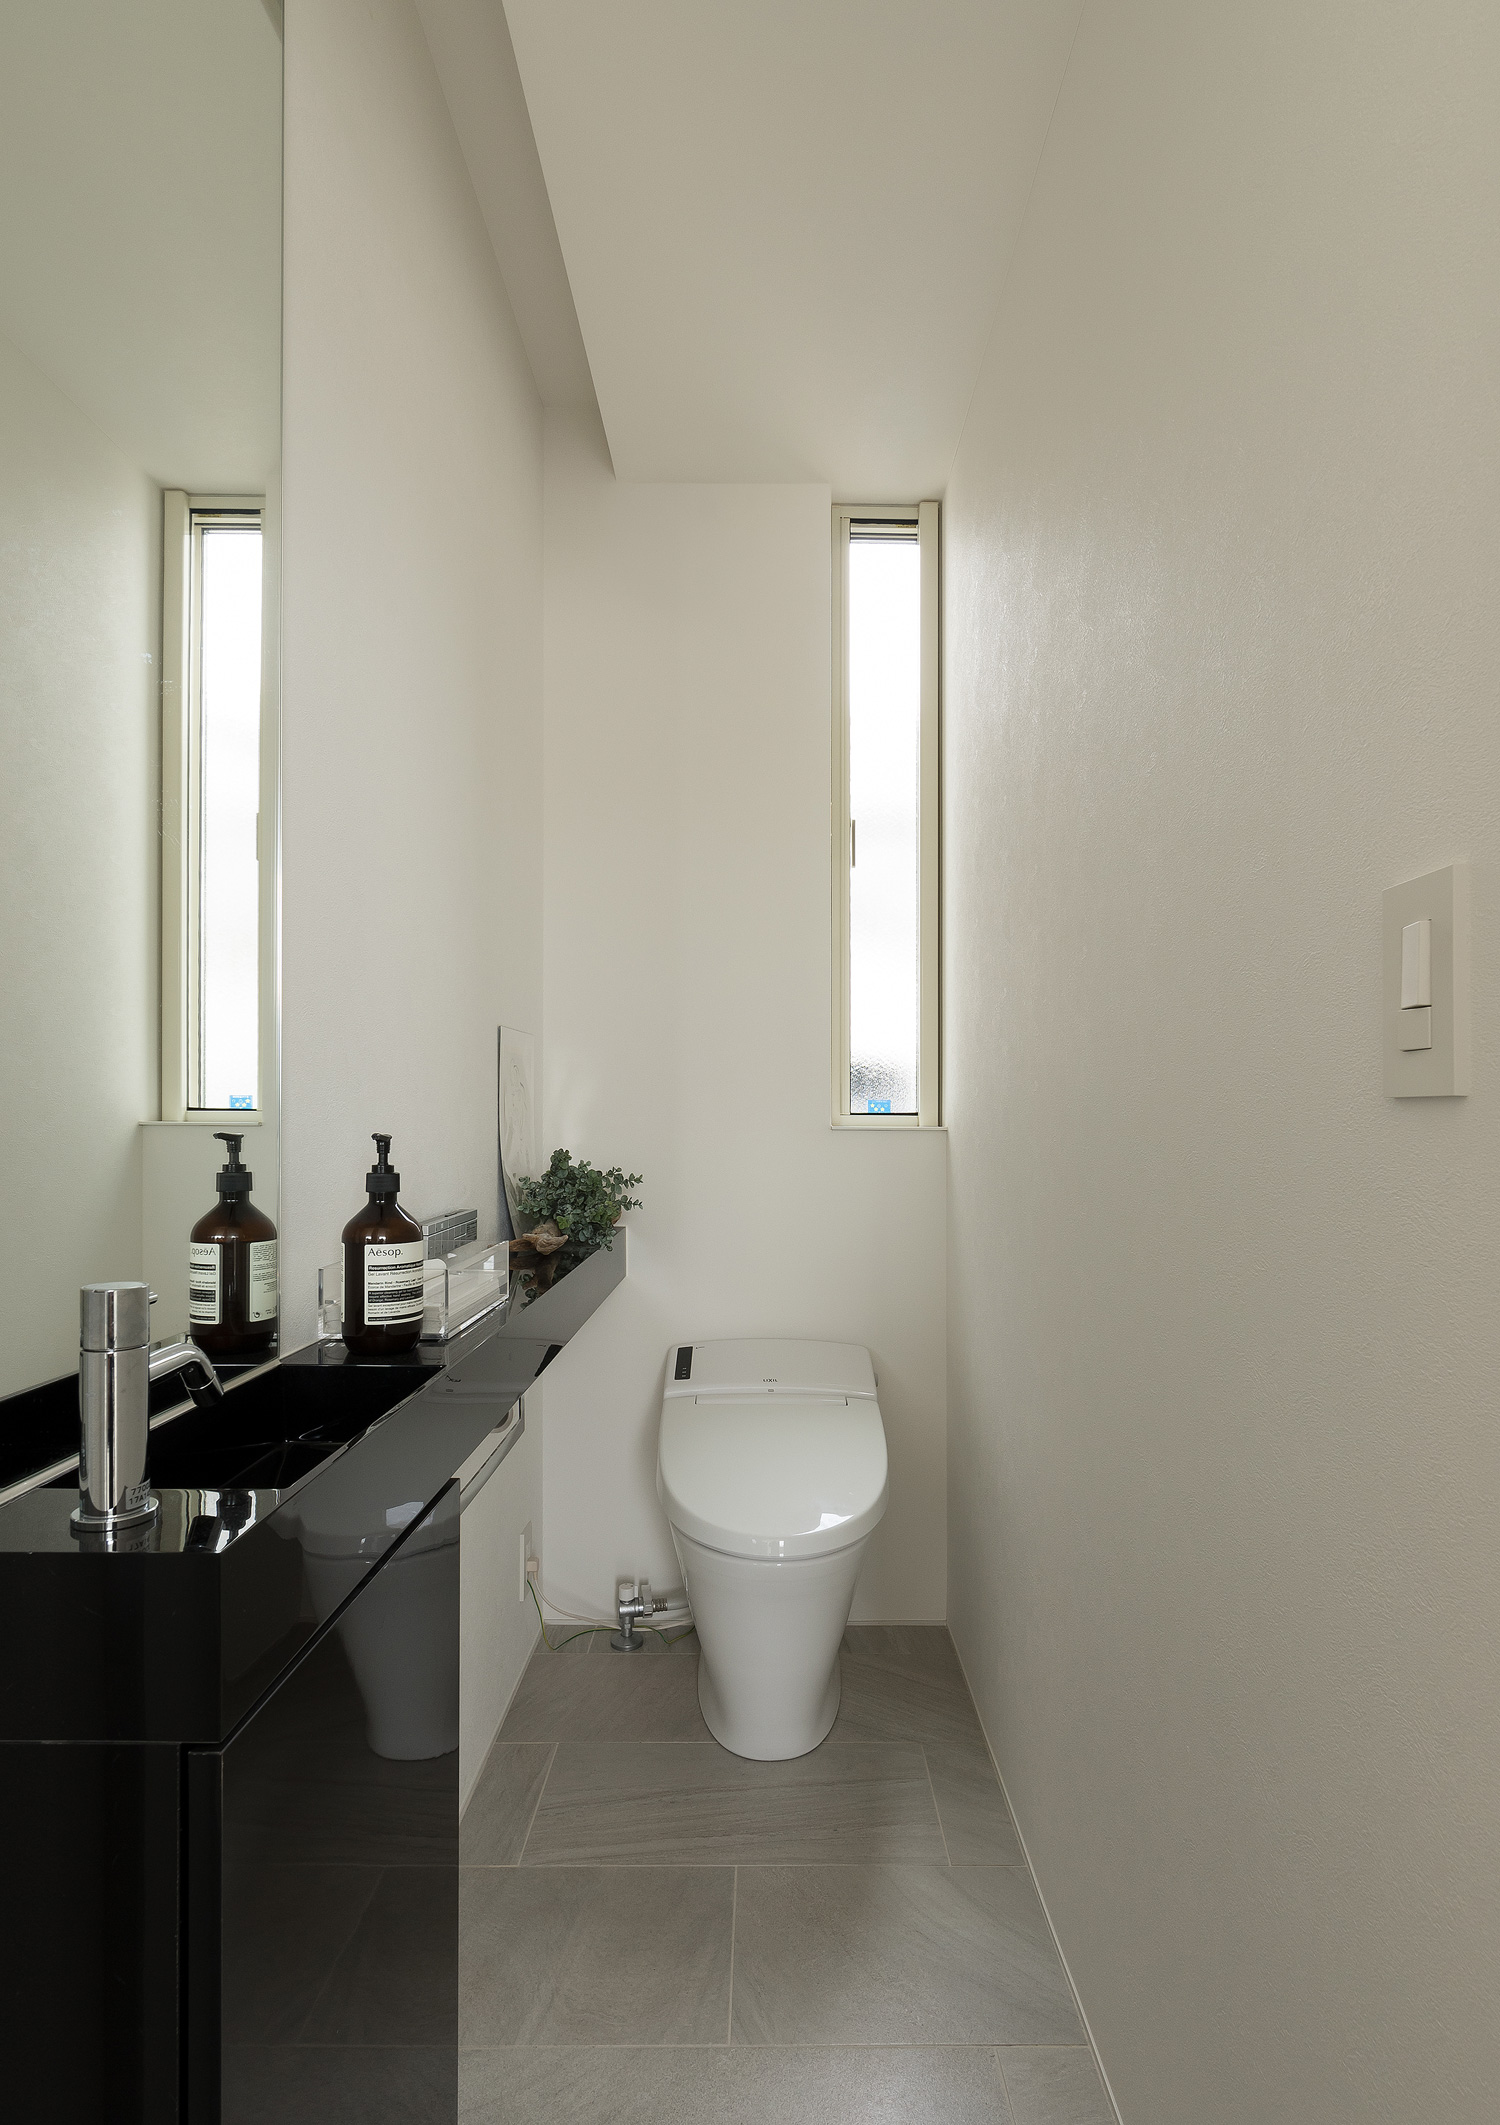 縦長のスリット窓が取り付けられた、黒い薄型手洗いのあるトイレ・デザイン住宅